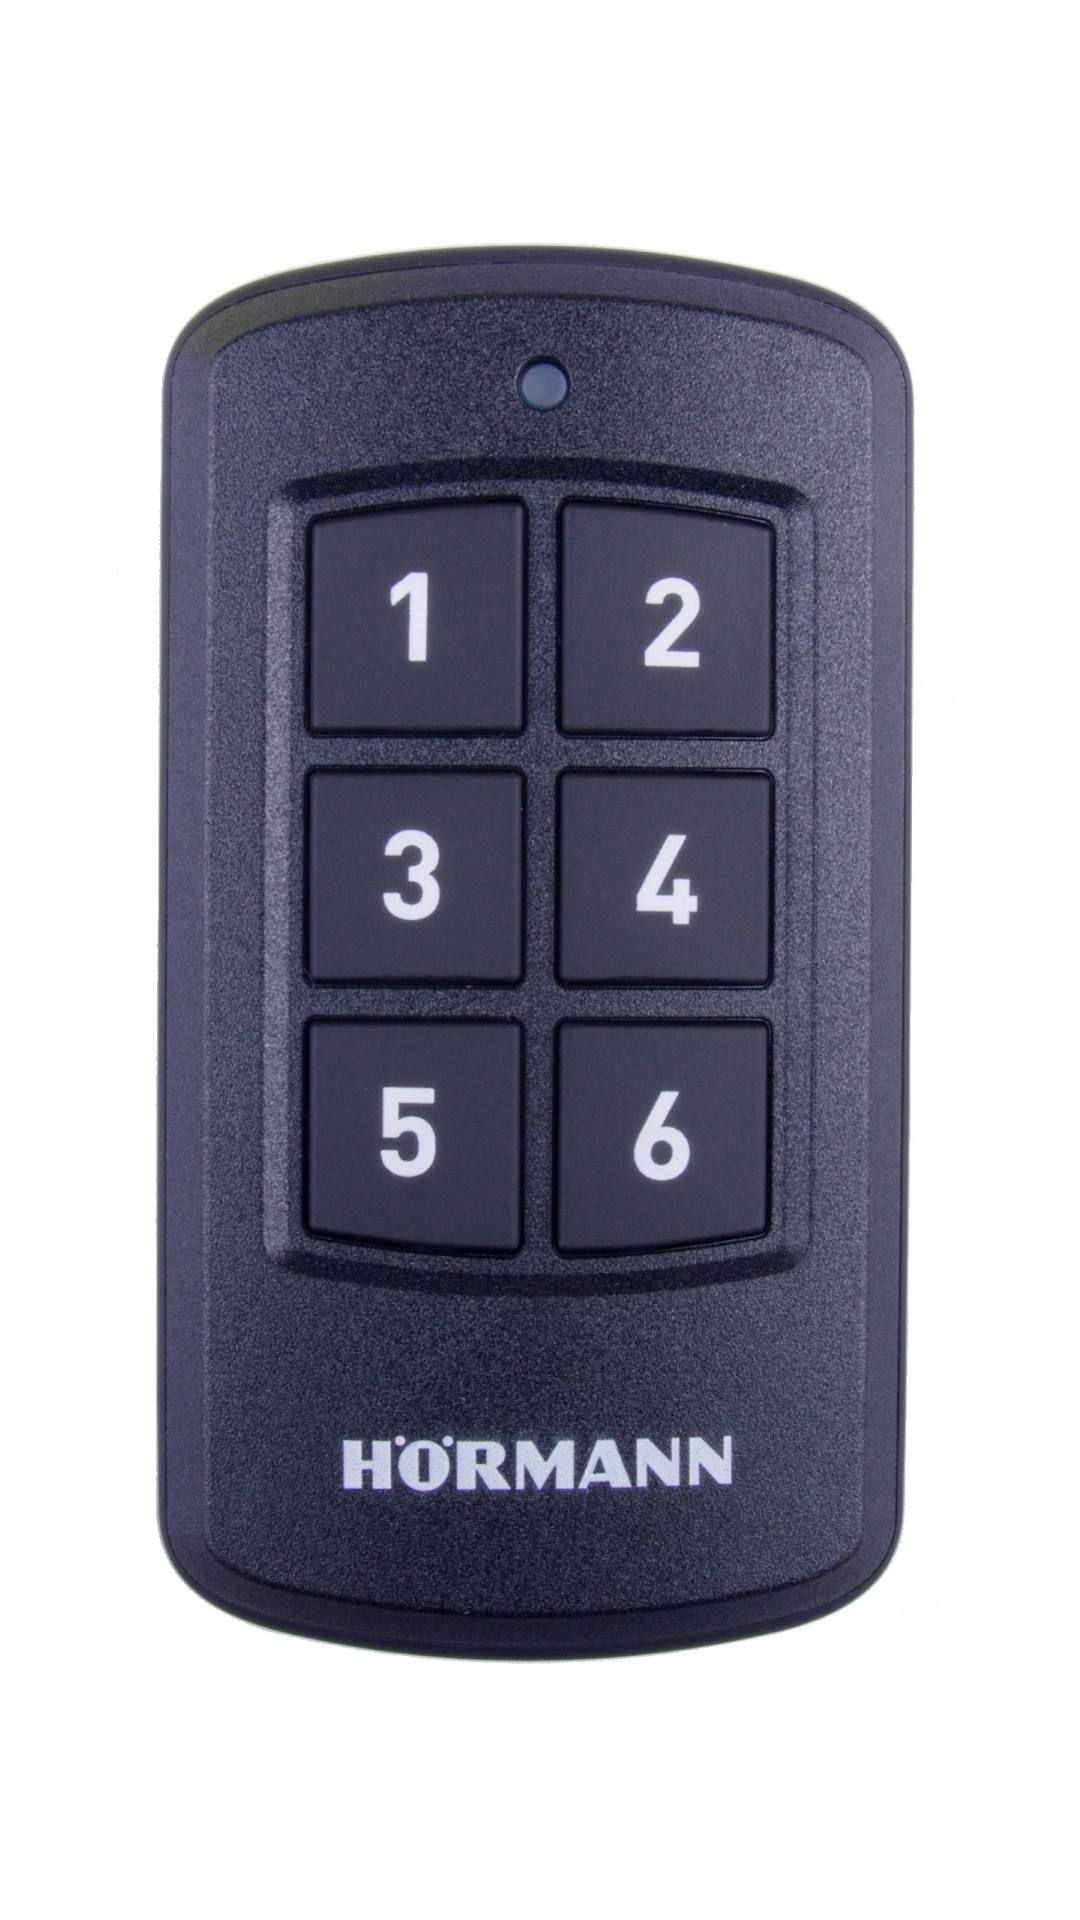 Hörmann HSI6-868-BS 6-kanálový průmyslový dálkový ovladač pro pohony Hörmann